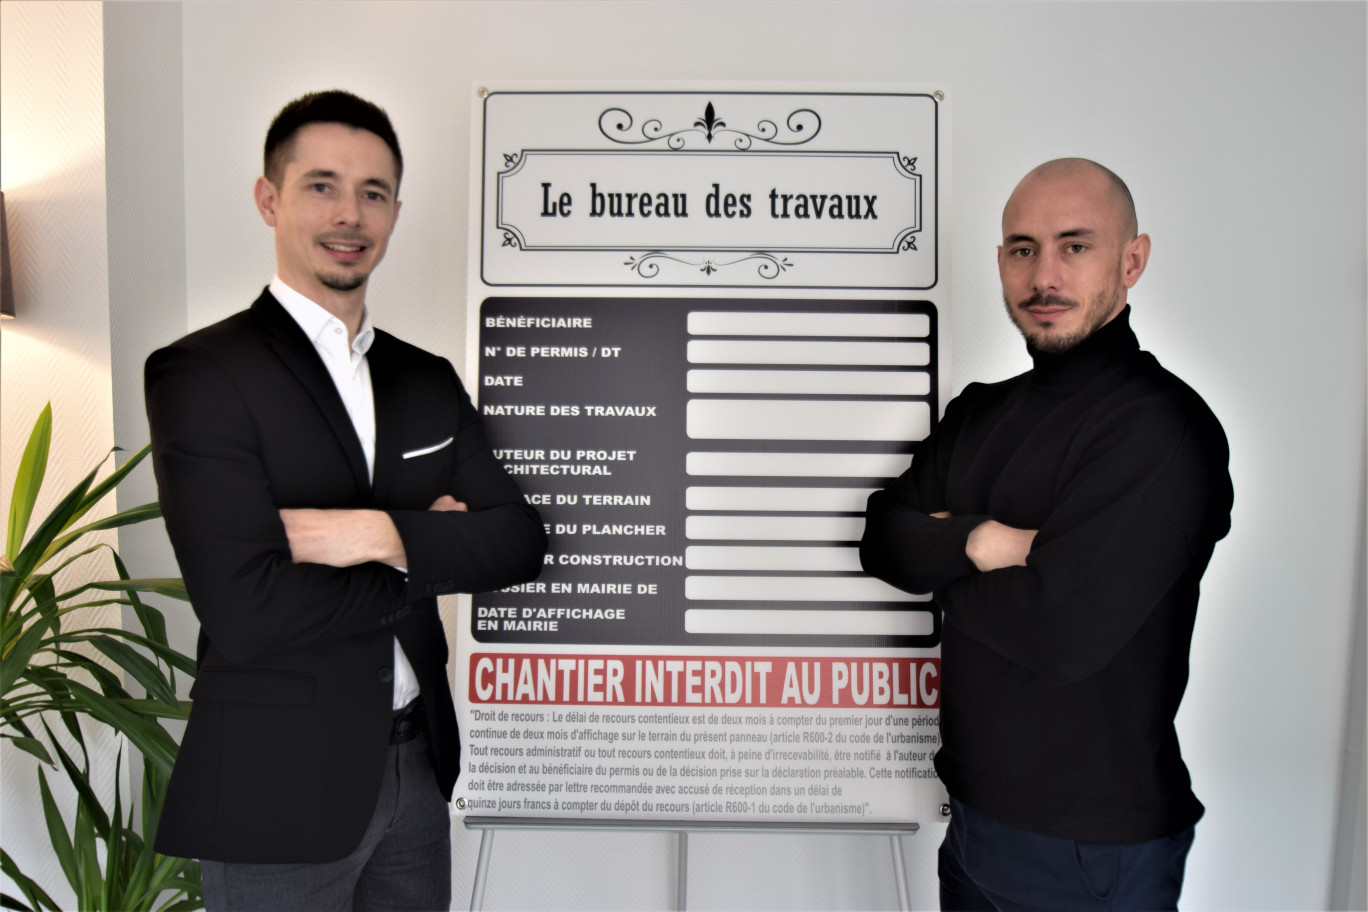 Alexandre et Tristan Weider développement un process d'accompagnement renforcé de leurs clients sur les projets immobiliers. © : Le bureau des travaux.